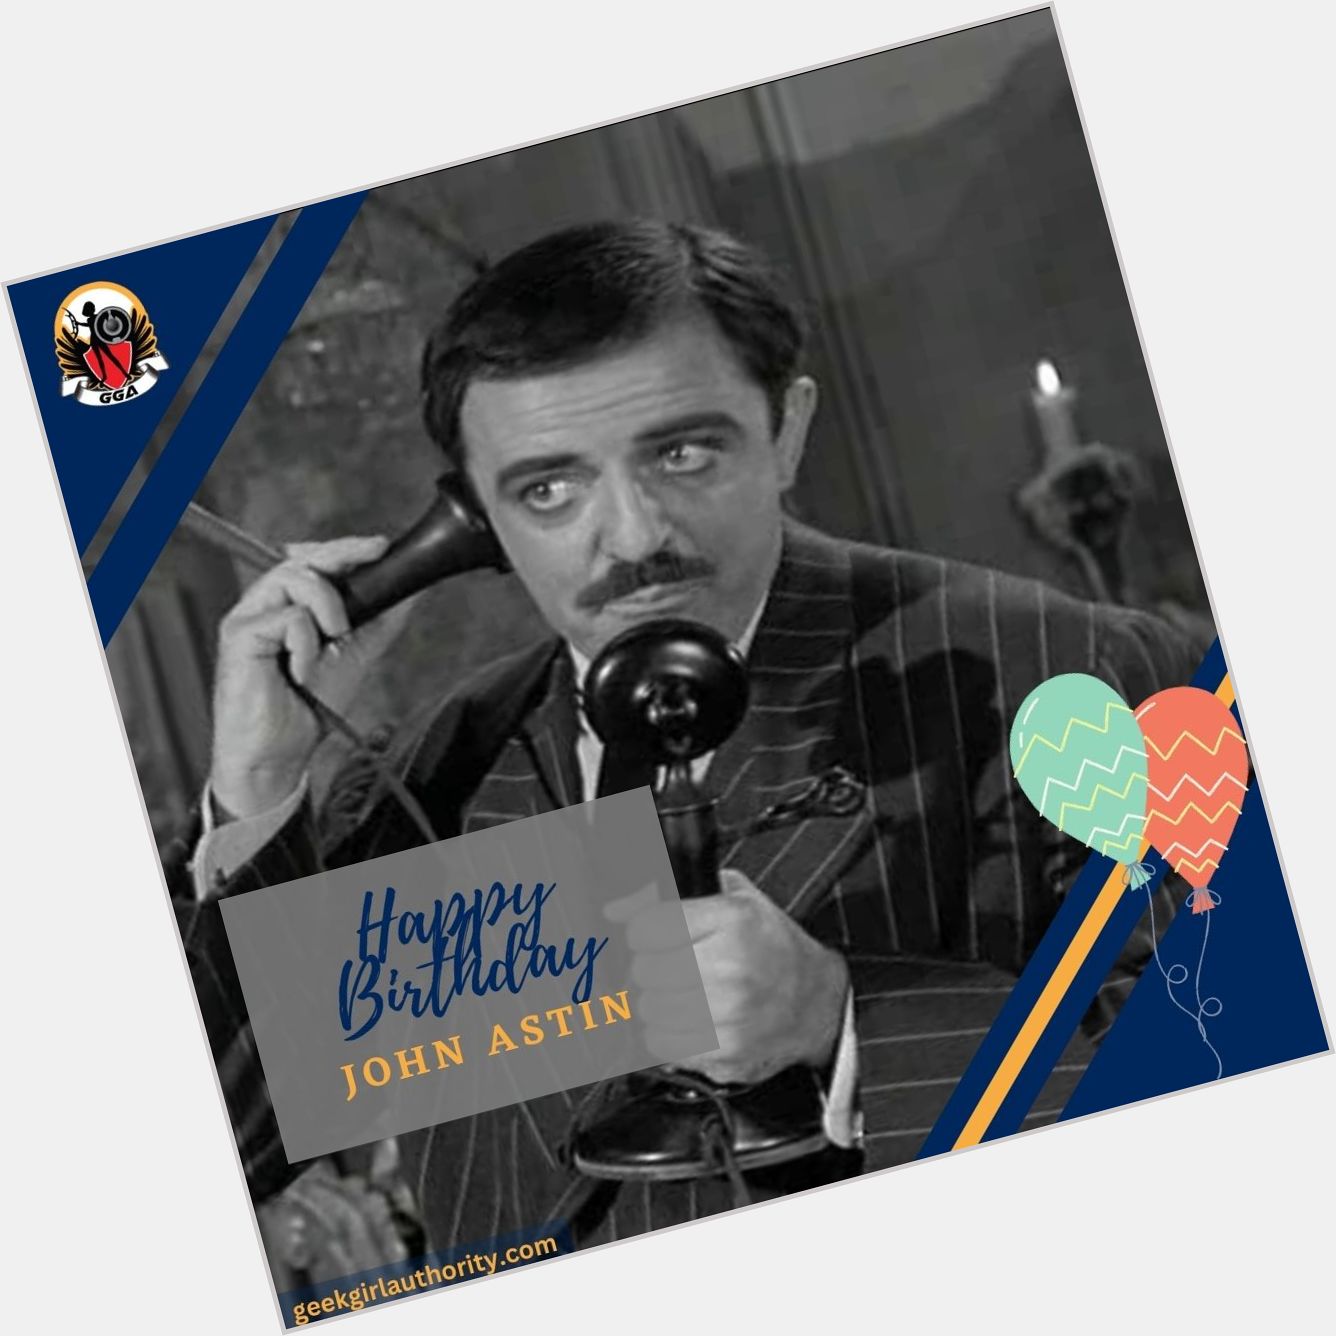 Happy Birthday to the OG Gomez Addams, John Astin!   